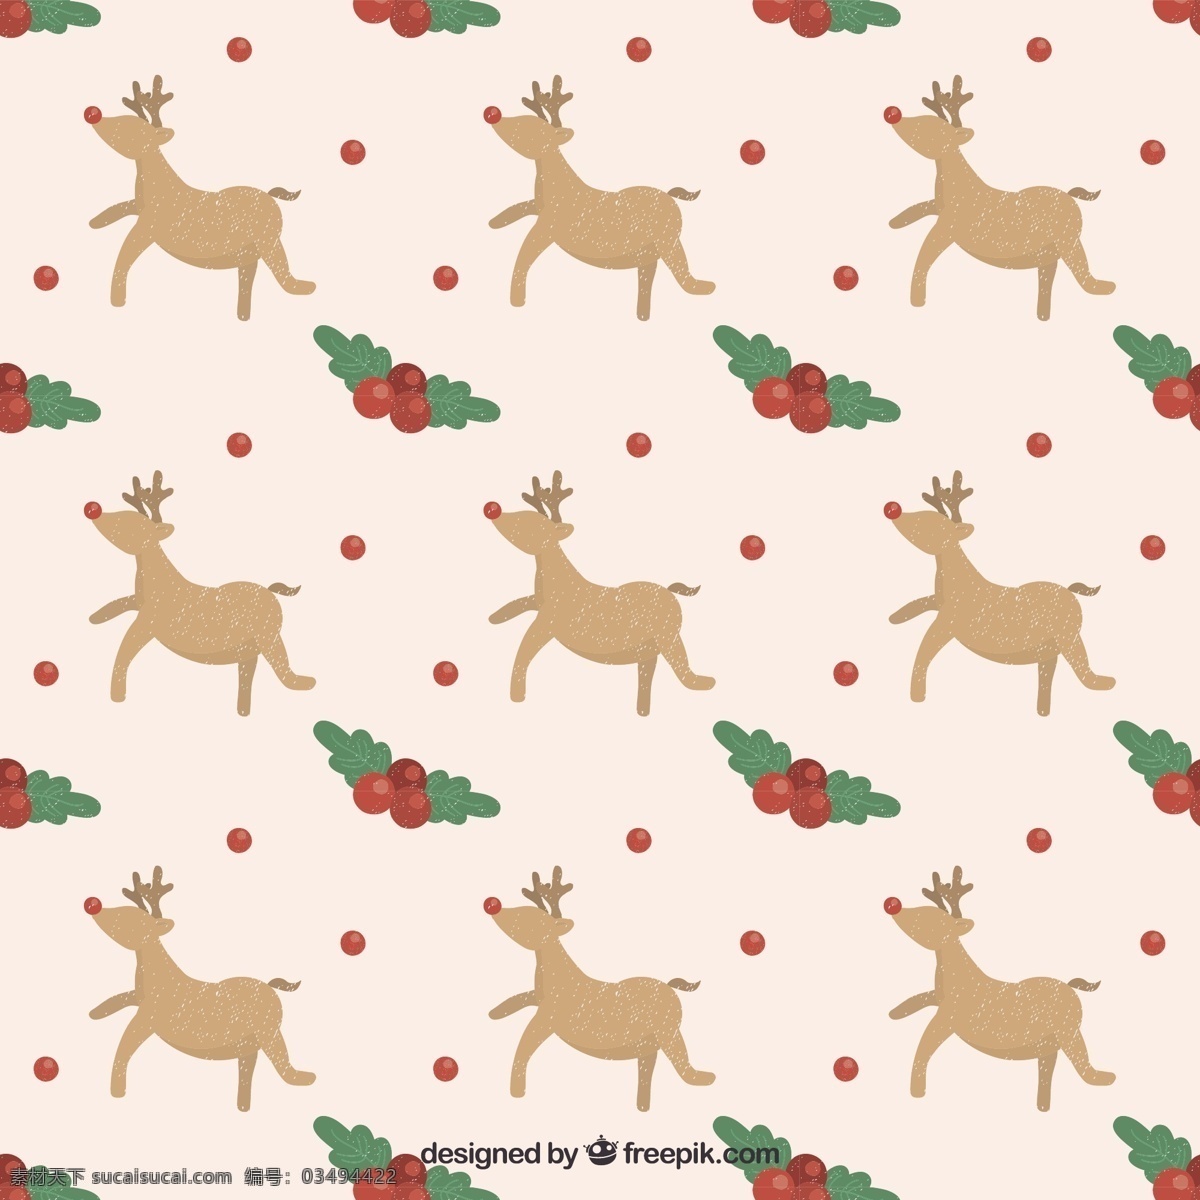 圣诞驯鹿图案 模式 圣诞节 动物 圣诞快乐 冬天快乐 庆祝节日 鹿 驯鹿 节日快乐 圣诞图案 槲寄生 季节 节日 快乐 十二月 圣诞鹿 白色